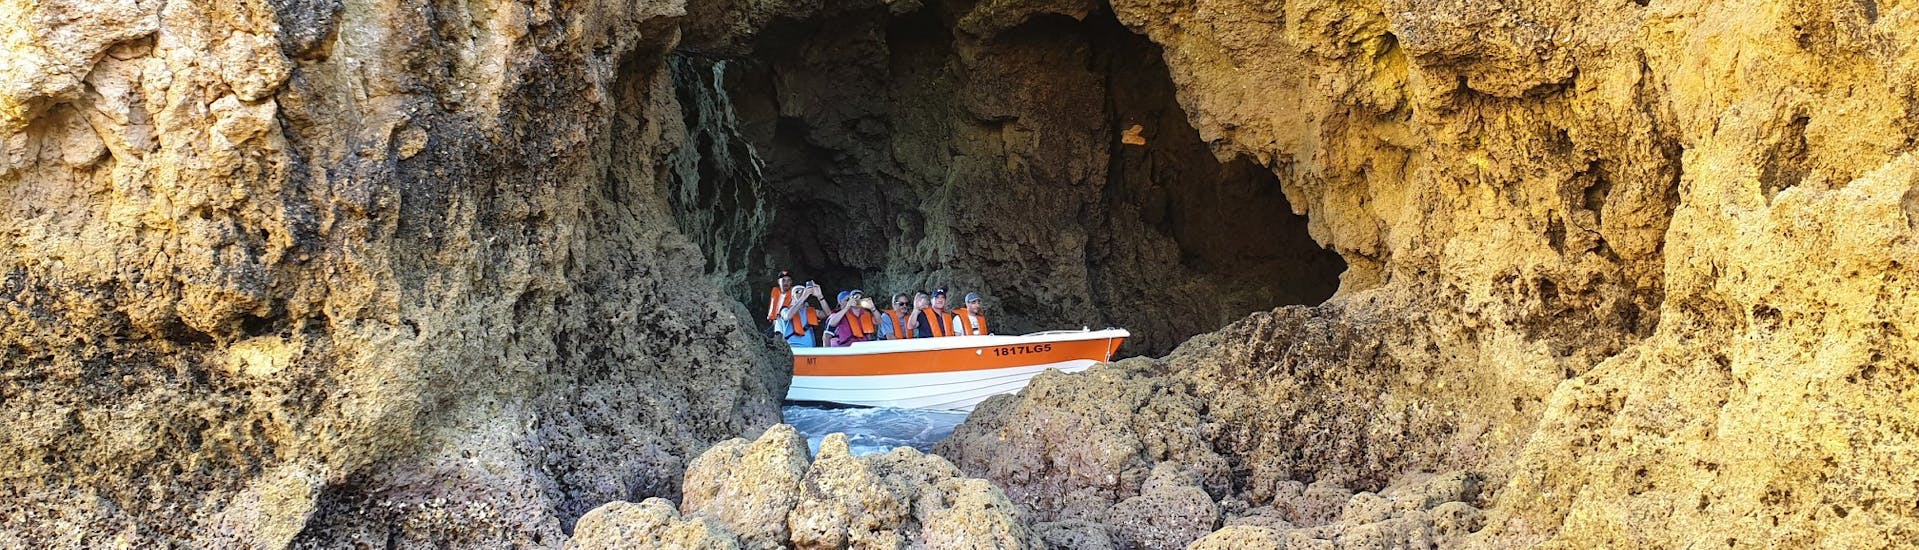 Das kleine Boot in einer Höhle während der Private Bootstour zu den Höhlen von Ponta da Piedade.